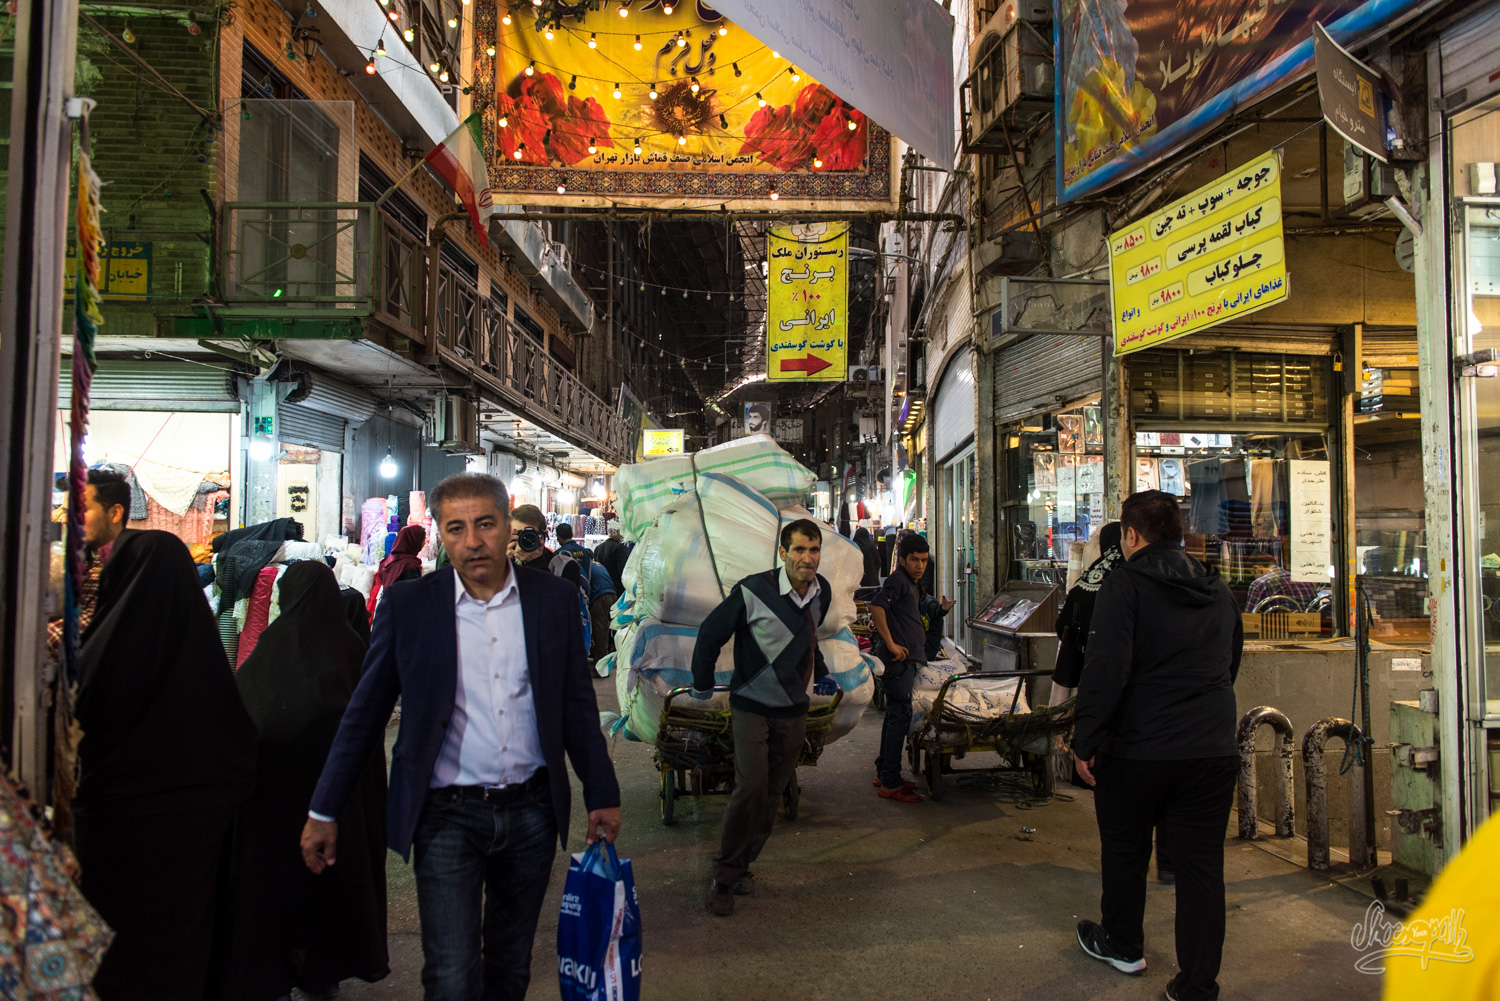 Iran - Teheran - Grand Bazar e Bozorg